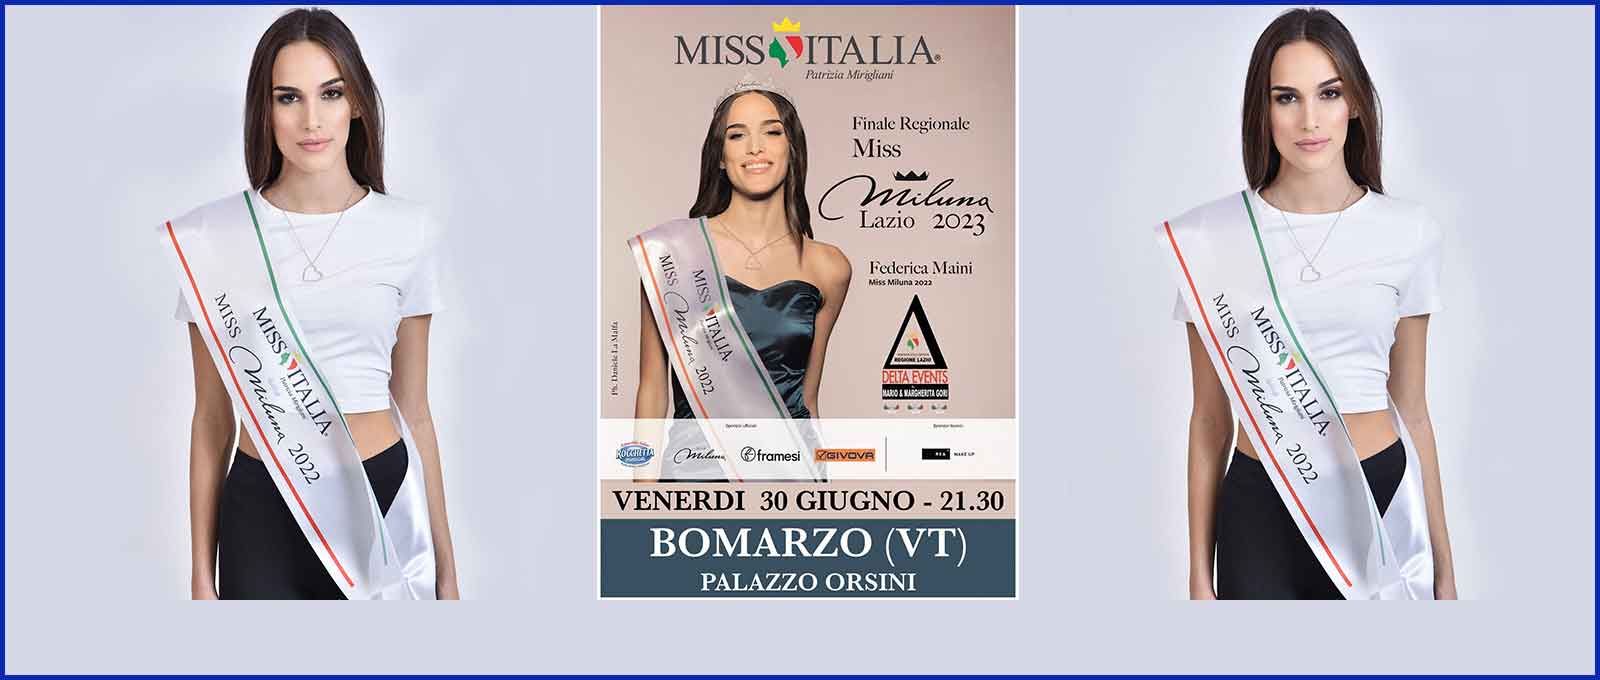 Miss Italia a Bomarzo Palazzo Orsini